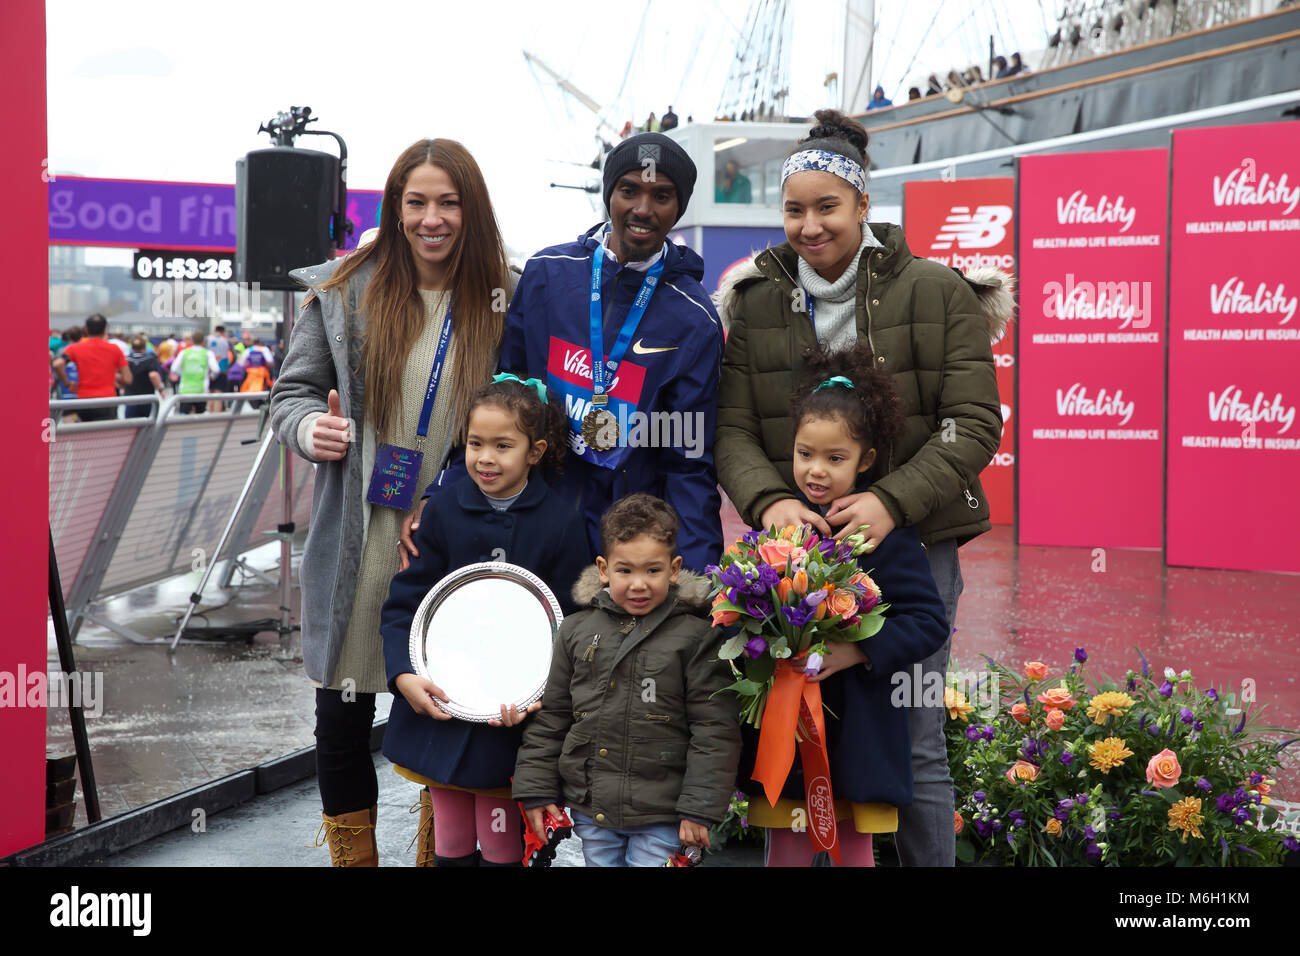 Greenwich, Royaume-Uni, 4 mars 2018,Mo Farah a remporté la vitalité demi qui a terminé à Greenwich après avoir terminé le demi-marathon de London Bridge. Larby Keith crédit/ Alamy Live News Banque D'Images